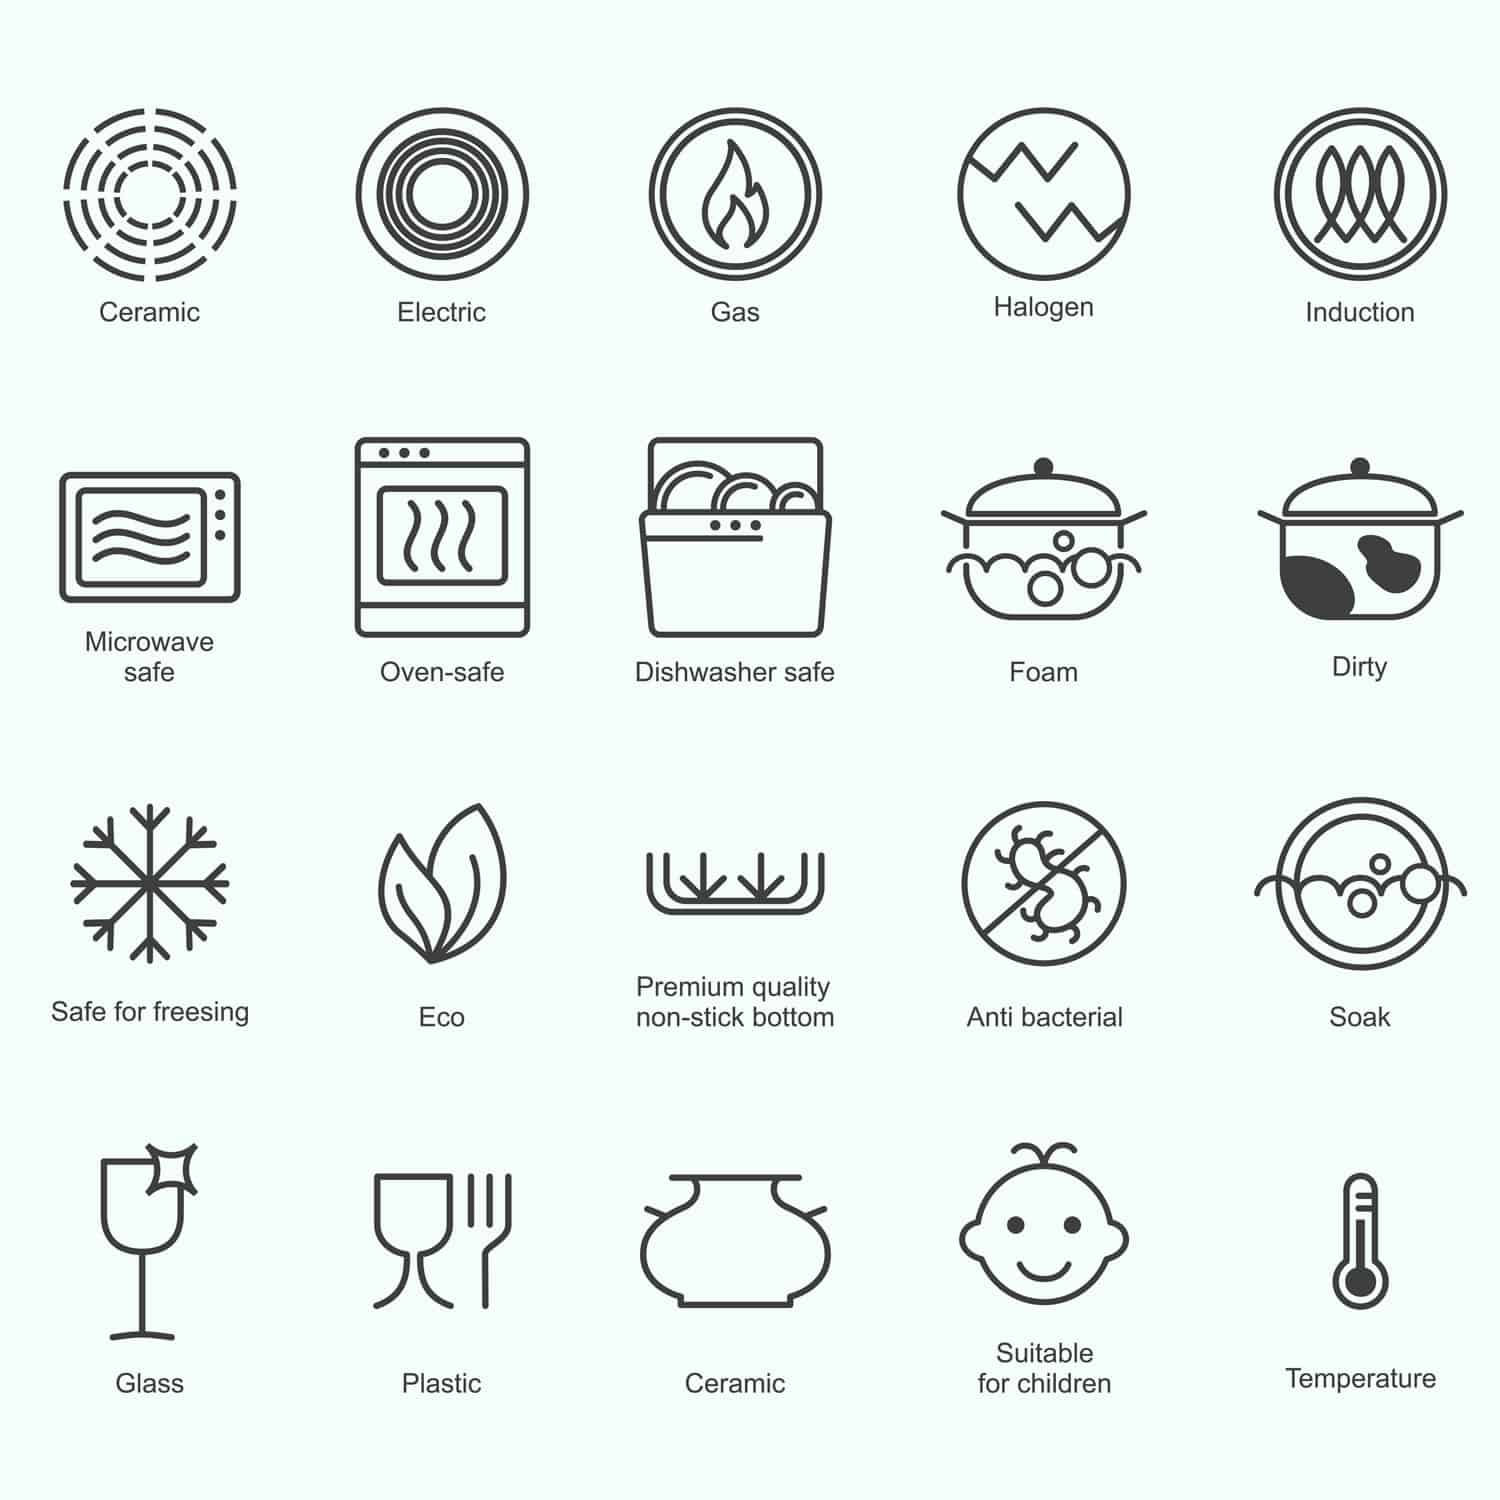 Symbols of food grade materials